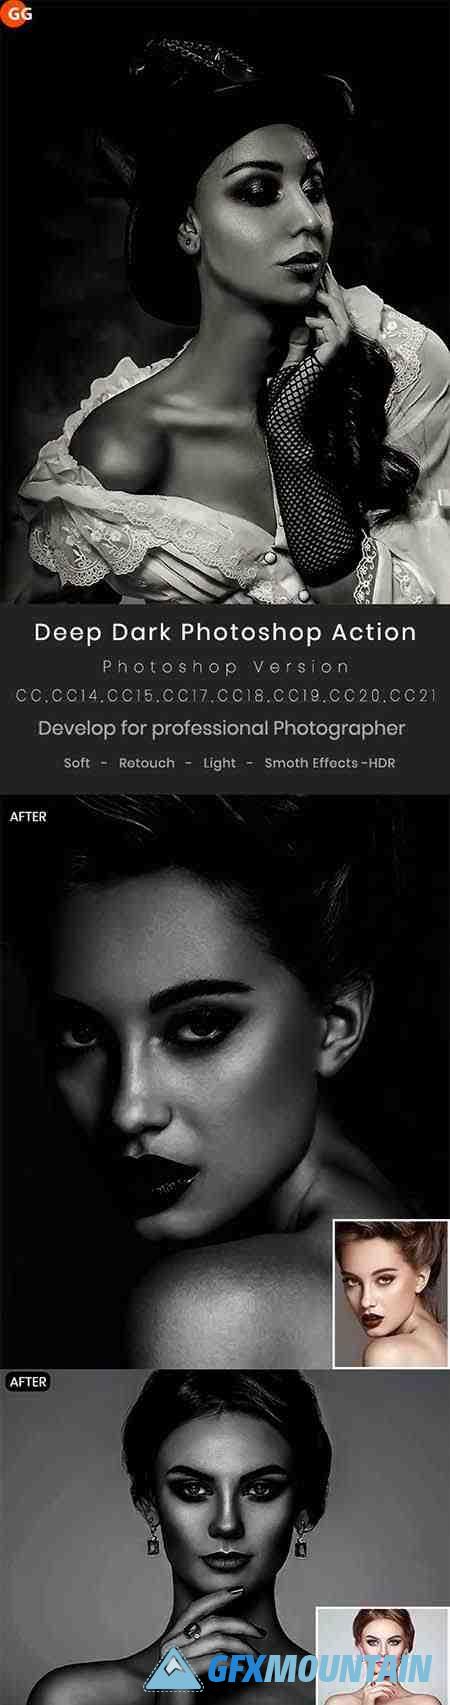 Deep Dark Photoshop Action - 30054555